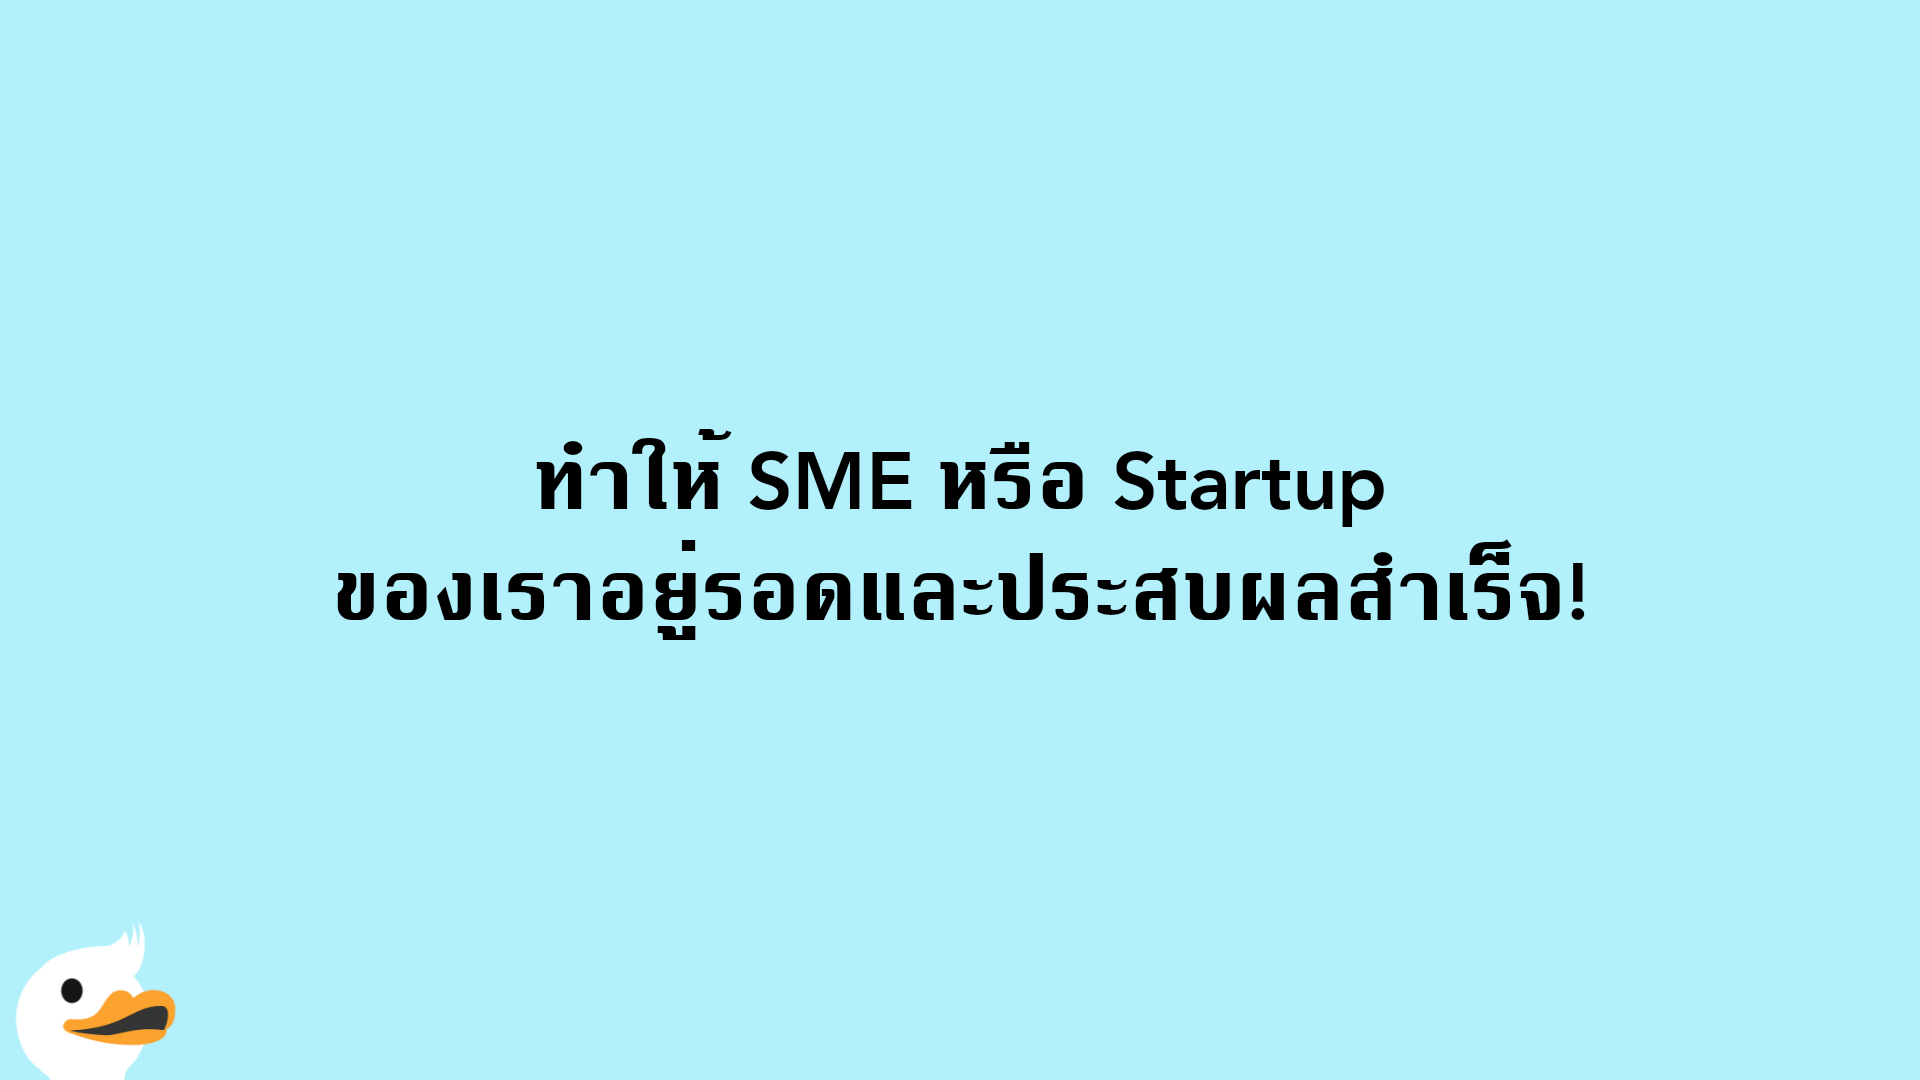 ทำให้ SME หรือ Startup ของเราอยู่รอดและประสบผลสำเร็จ!